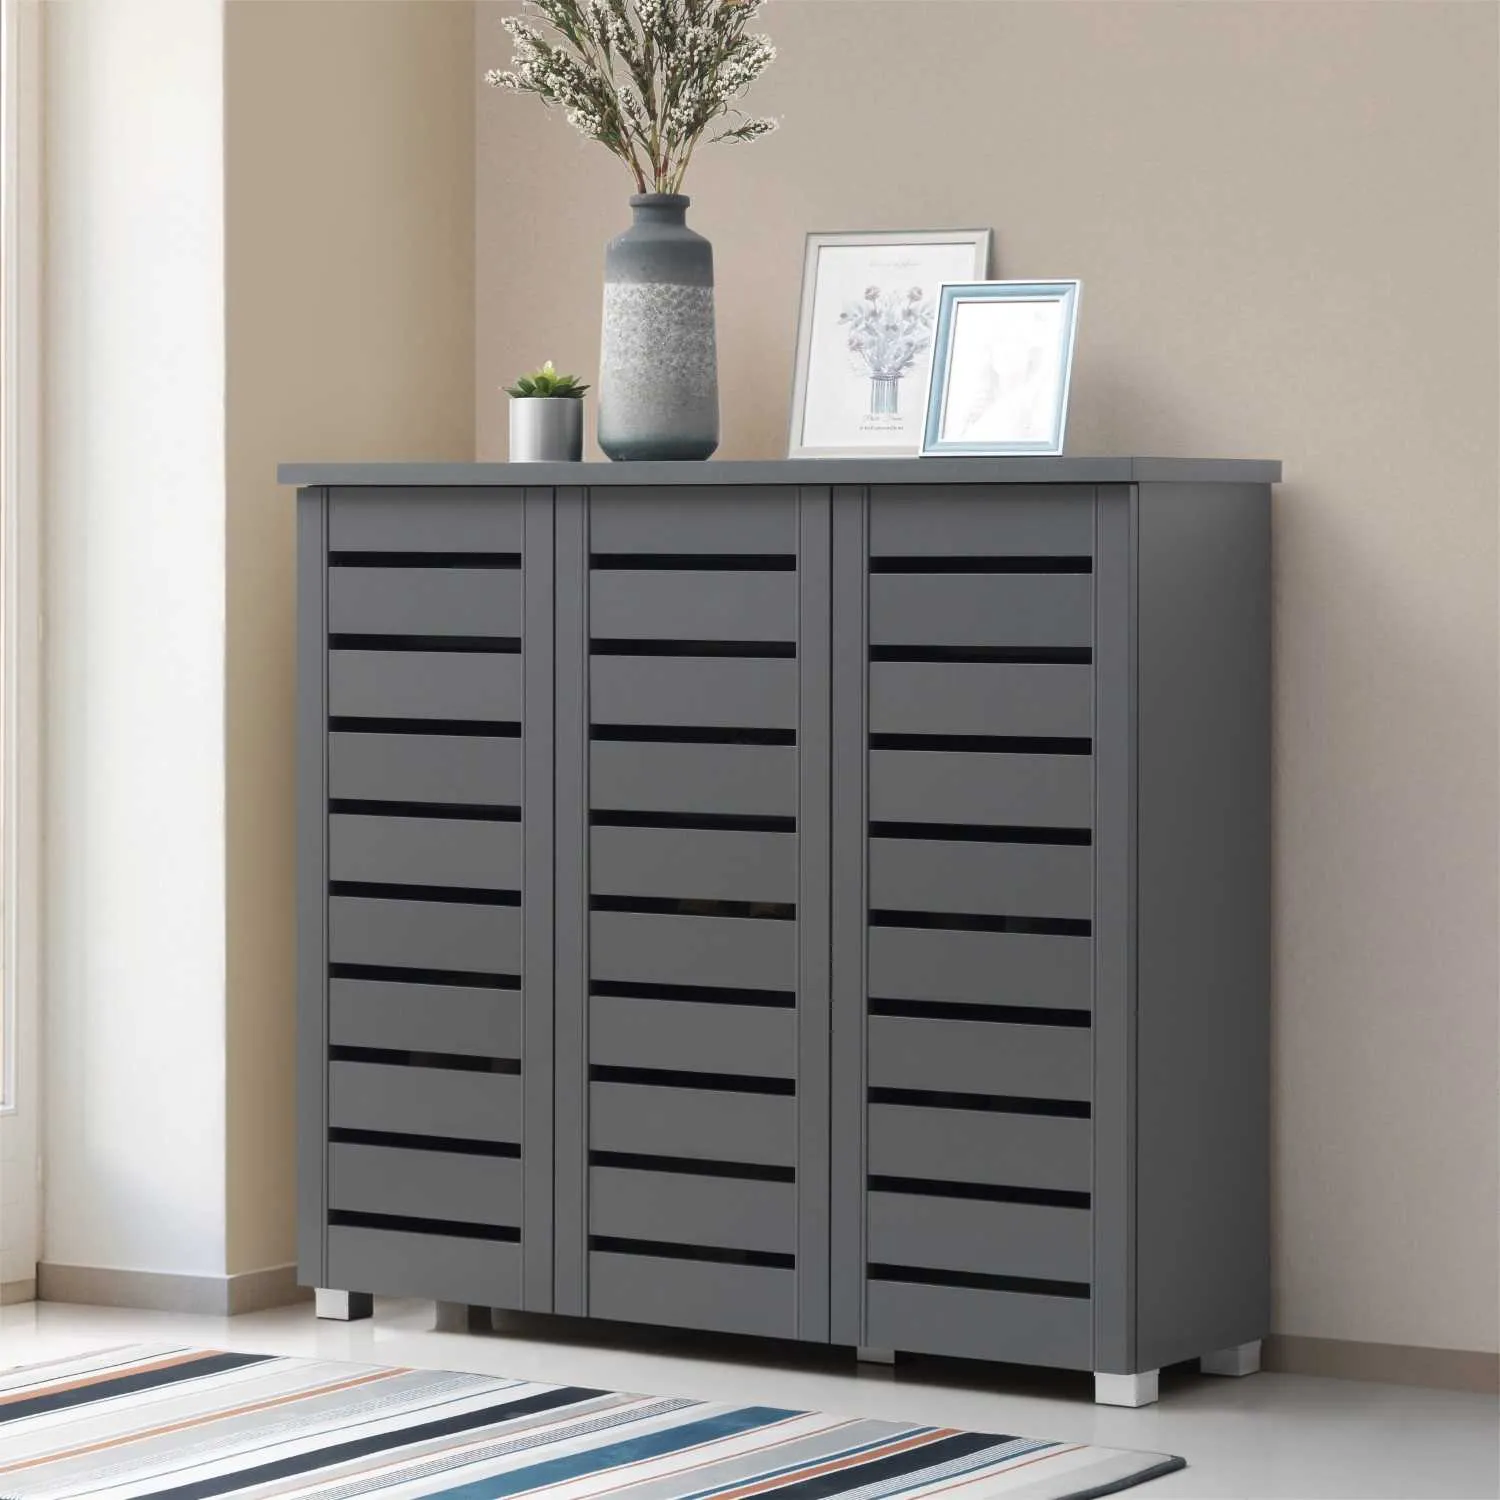 Dark Grey 3 Door Shoe Storage Cabinet Rack with 4 Shelves Panelling Fronts